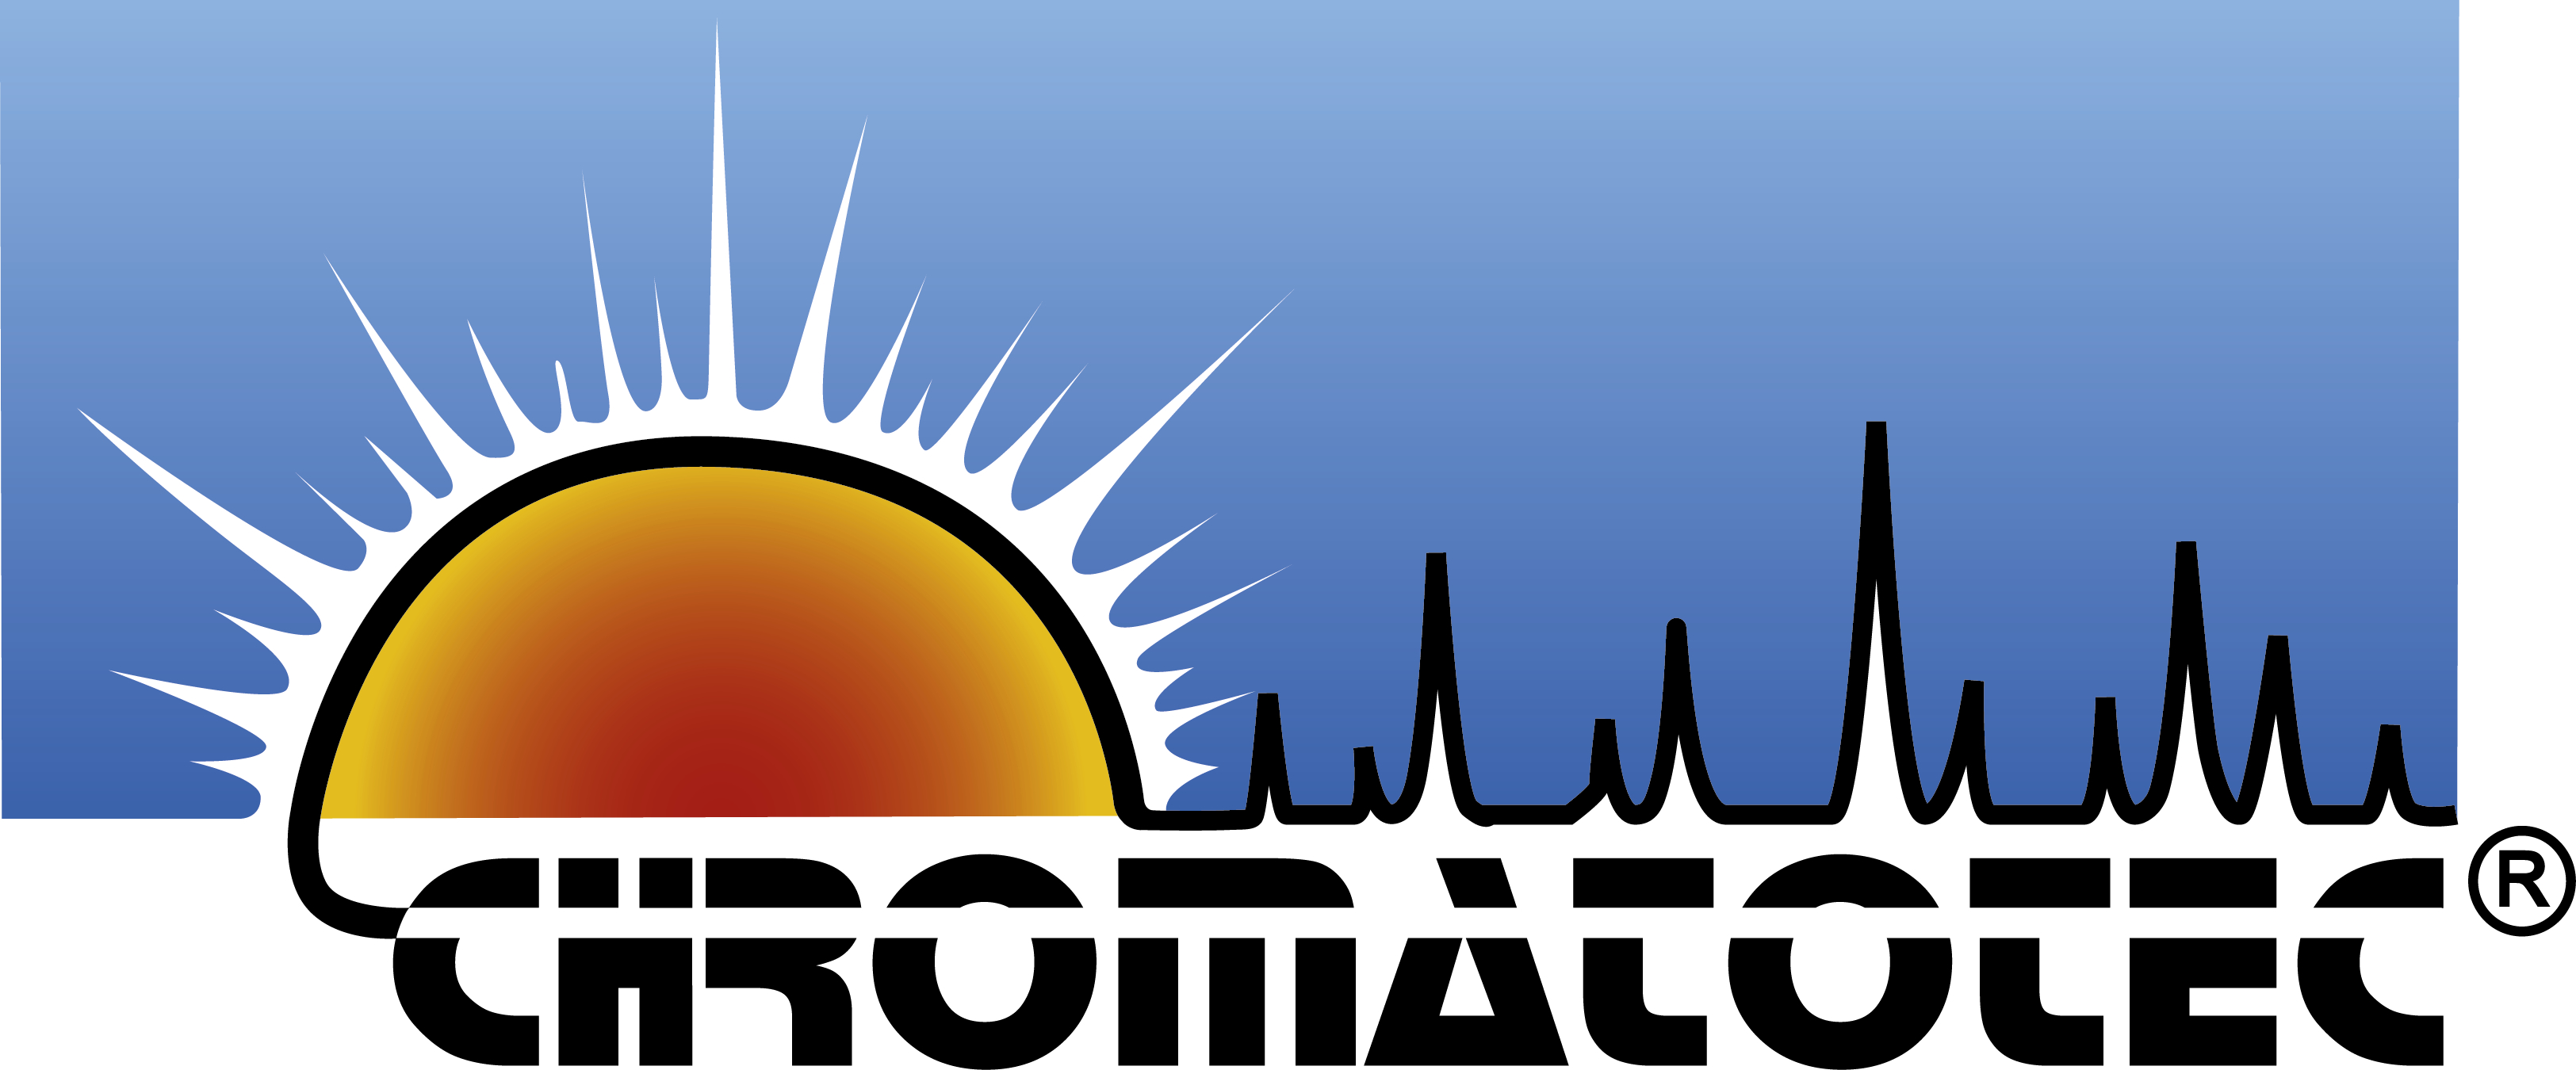 Logo AIRMOTEC / CHROMATOTEC